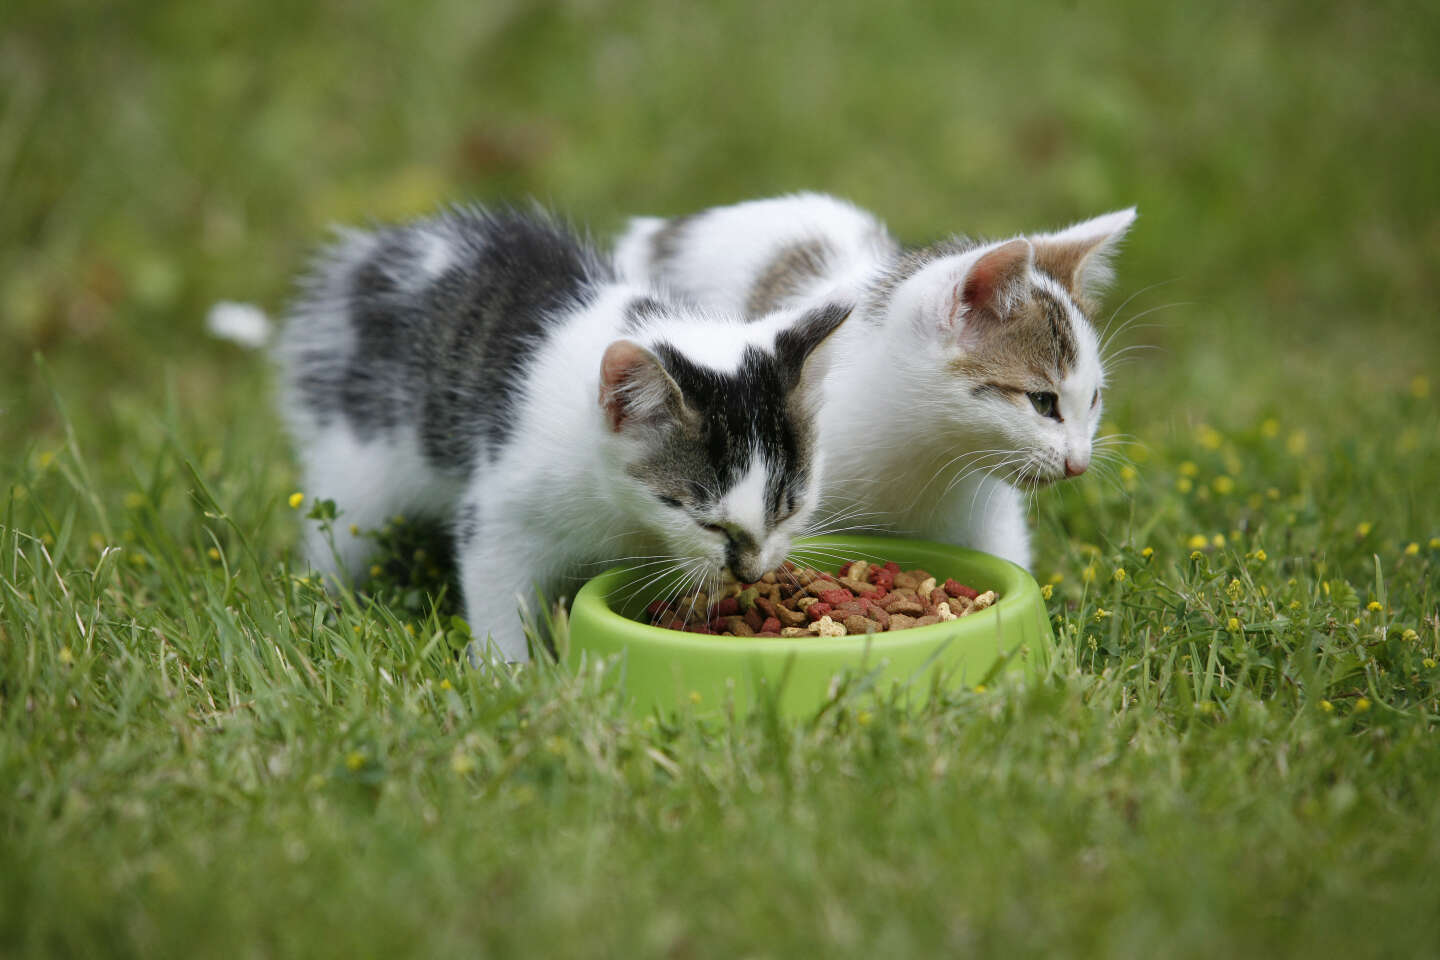 Les nitrites bientôt bannis des croquettes pour chiens et chats, mais seulement réduits pour l’alimentation humaine